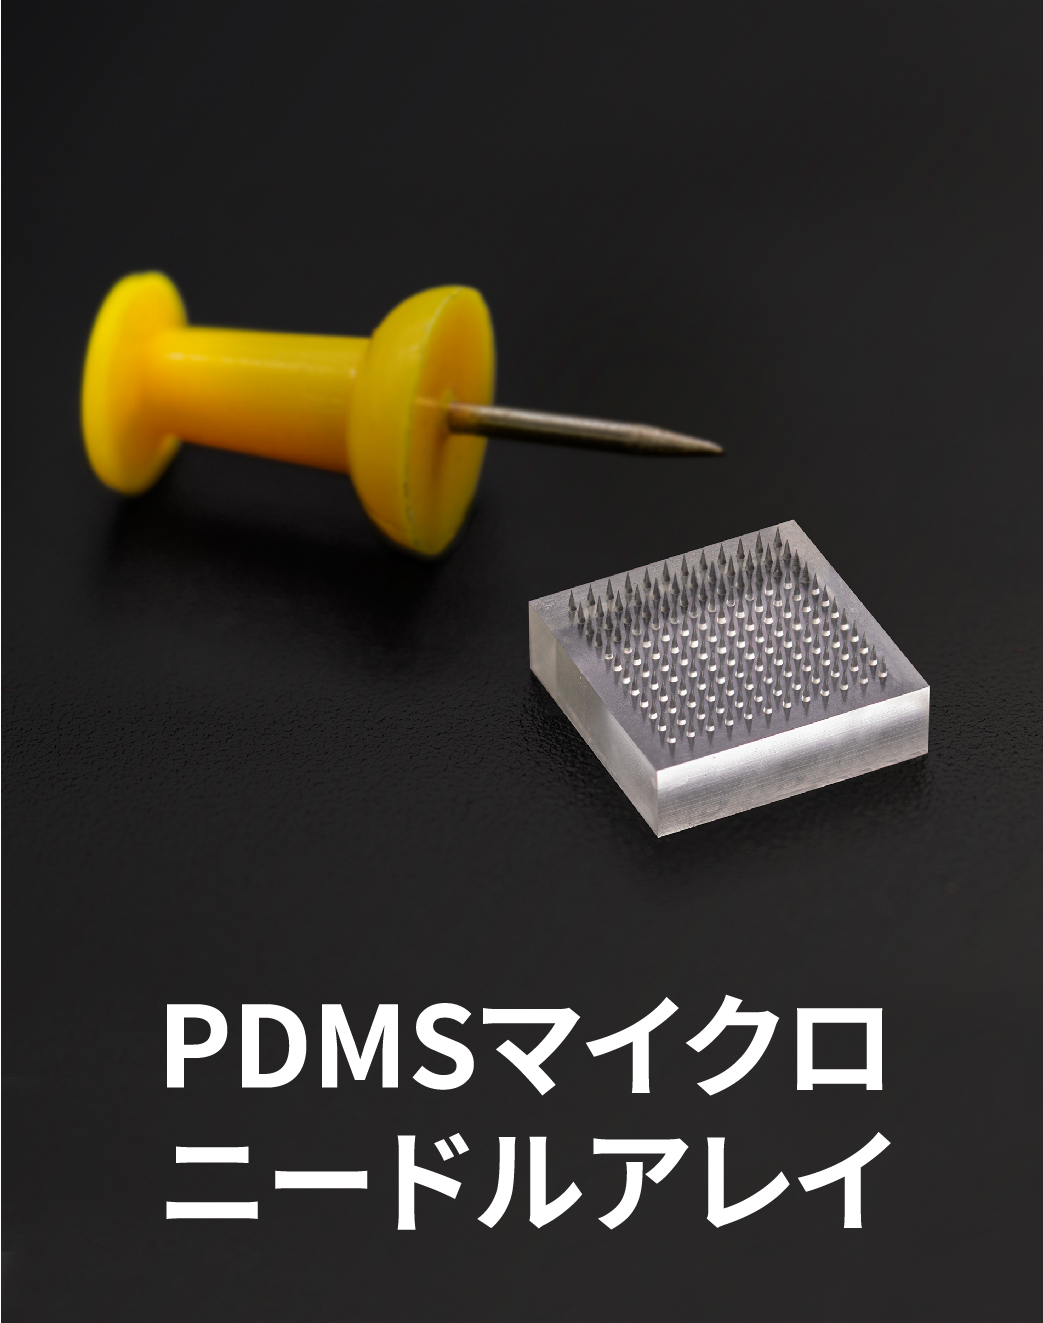 PDMSマイクロニードルアレイ